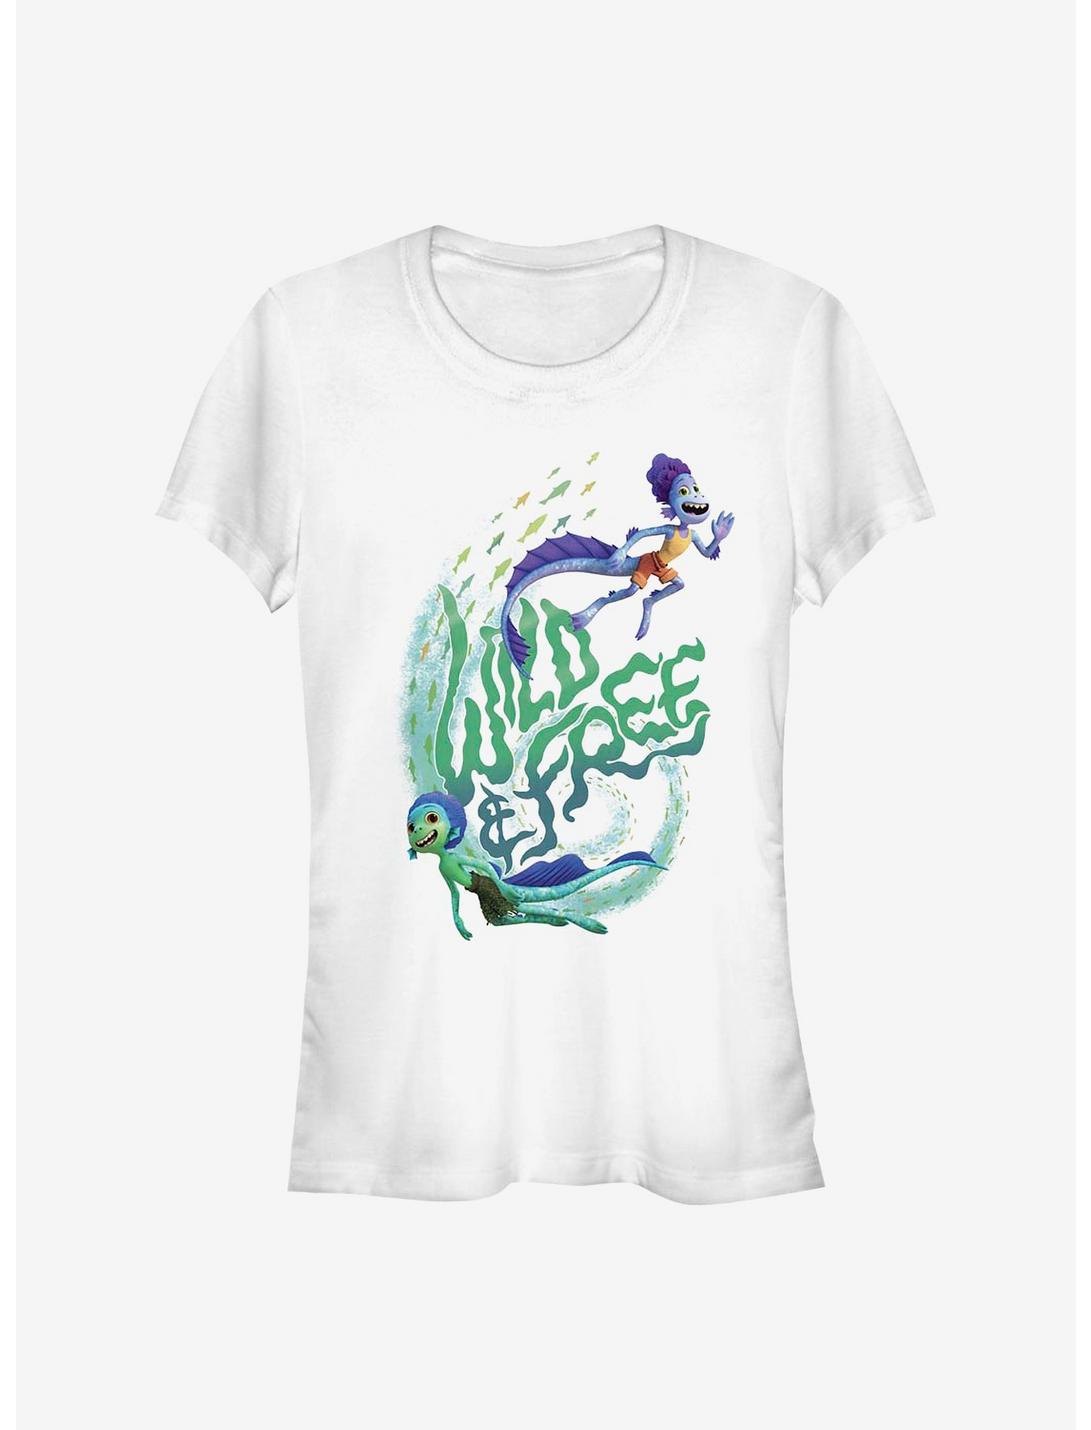 Disney Pixar Luca Wild & Free Girls T-Shirt, WHITE, hi-res